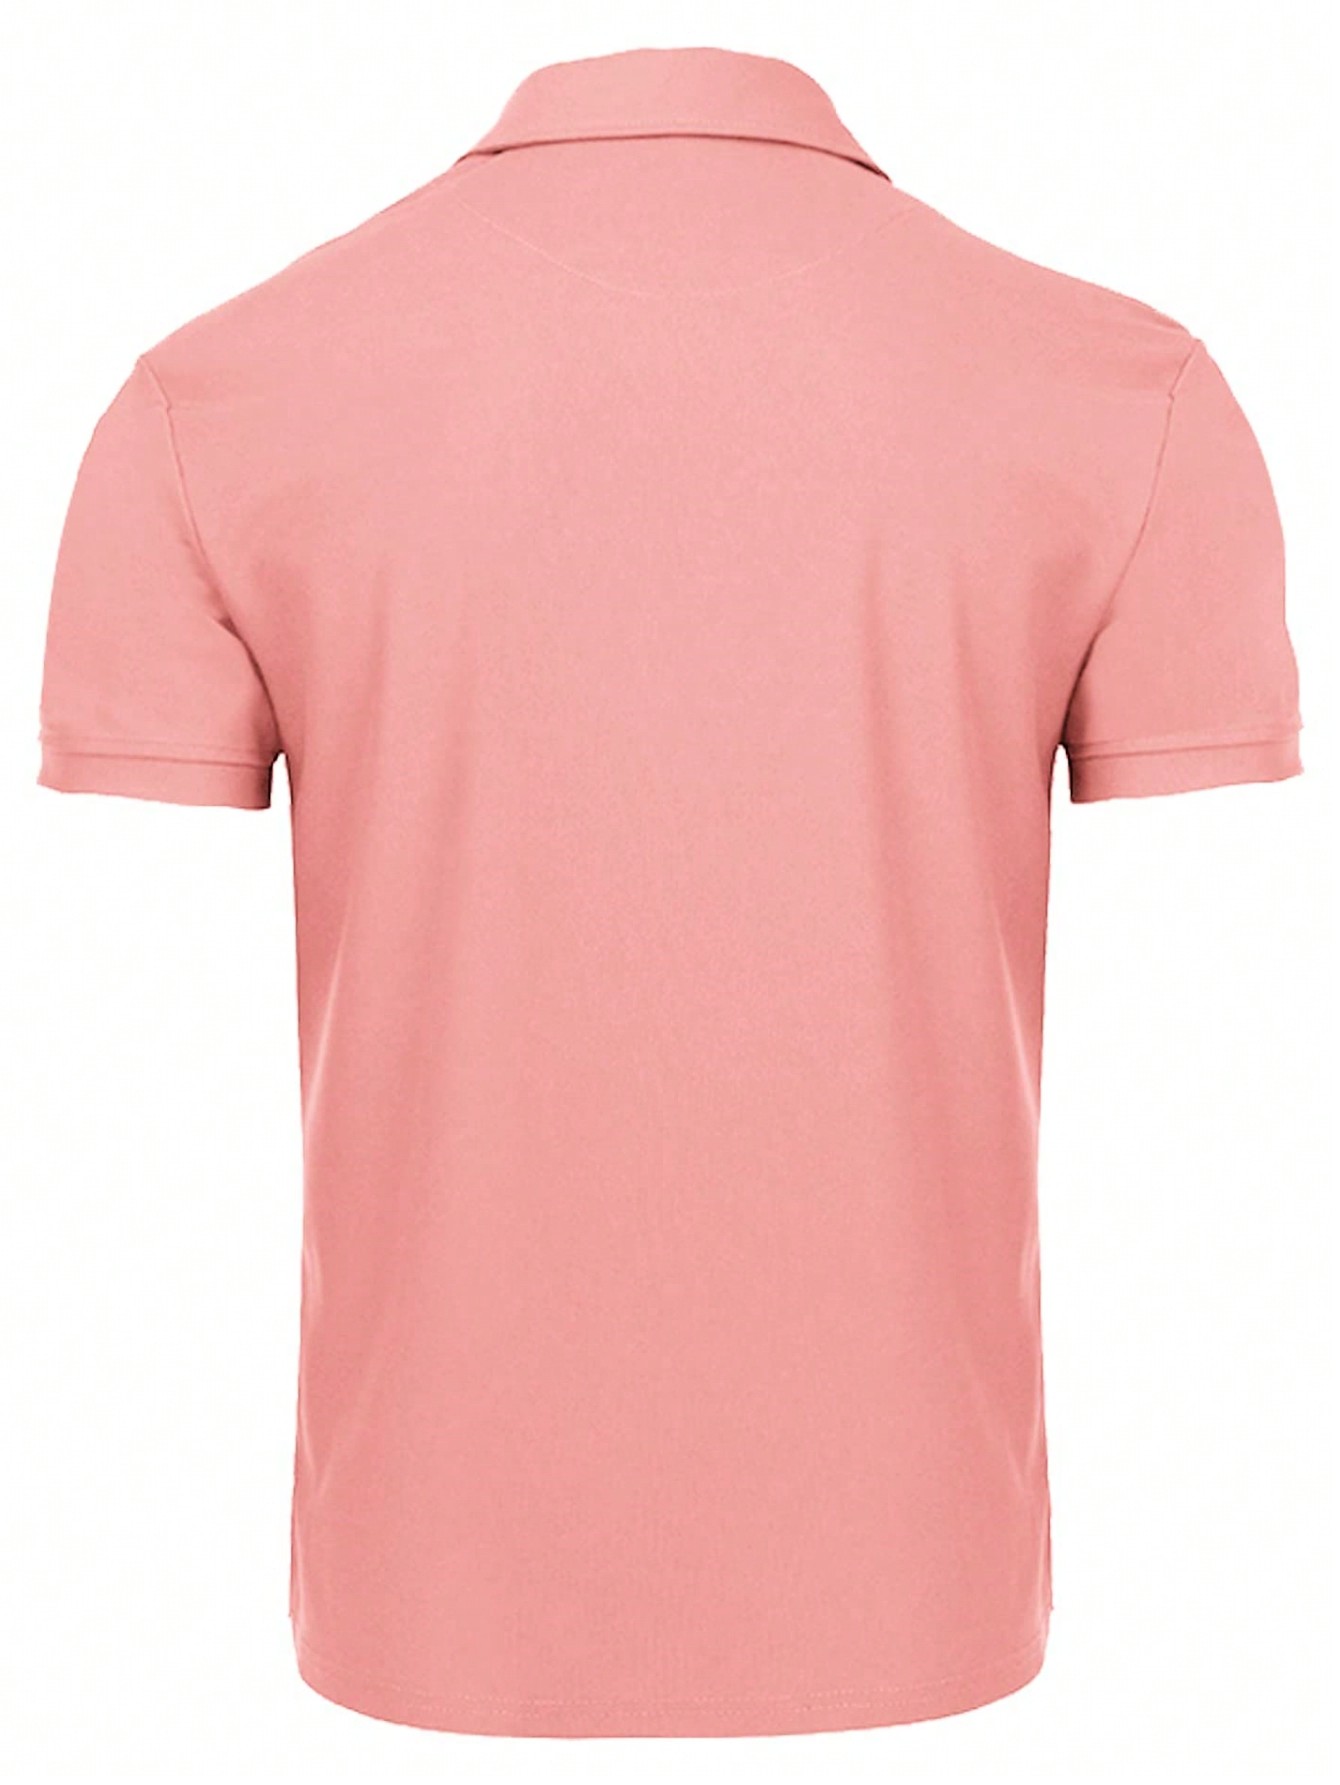 Мужская рубашка поло с коротким рукавом для отдыха, арбуз розовый футболка поло для гольфа с логотипом tech j lindeberg цвет high rise